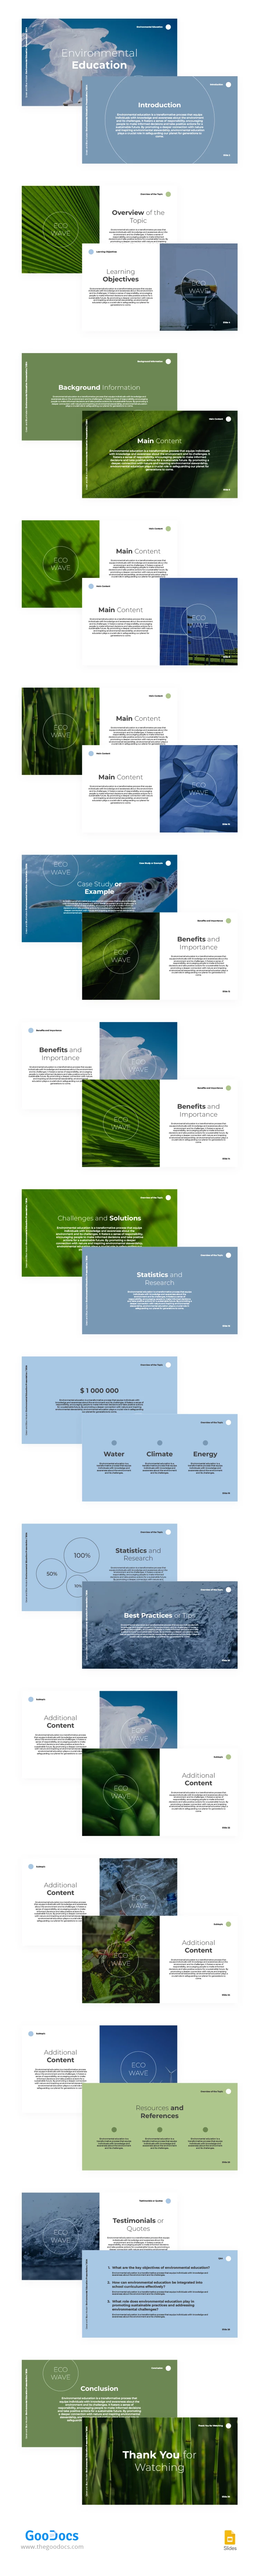 Educazione ambientale moderna in verde e blu - free Google Docs Template - 10066989